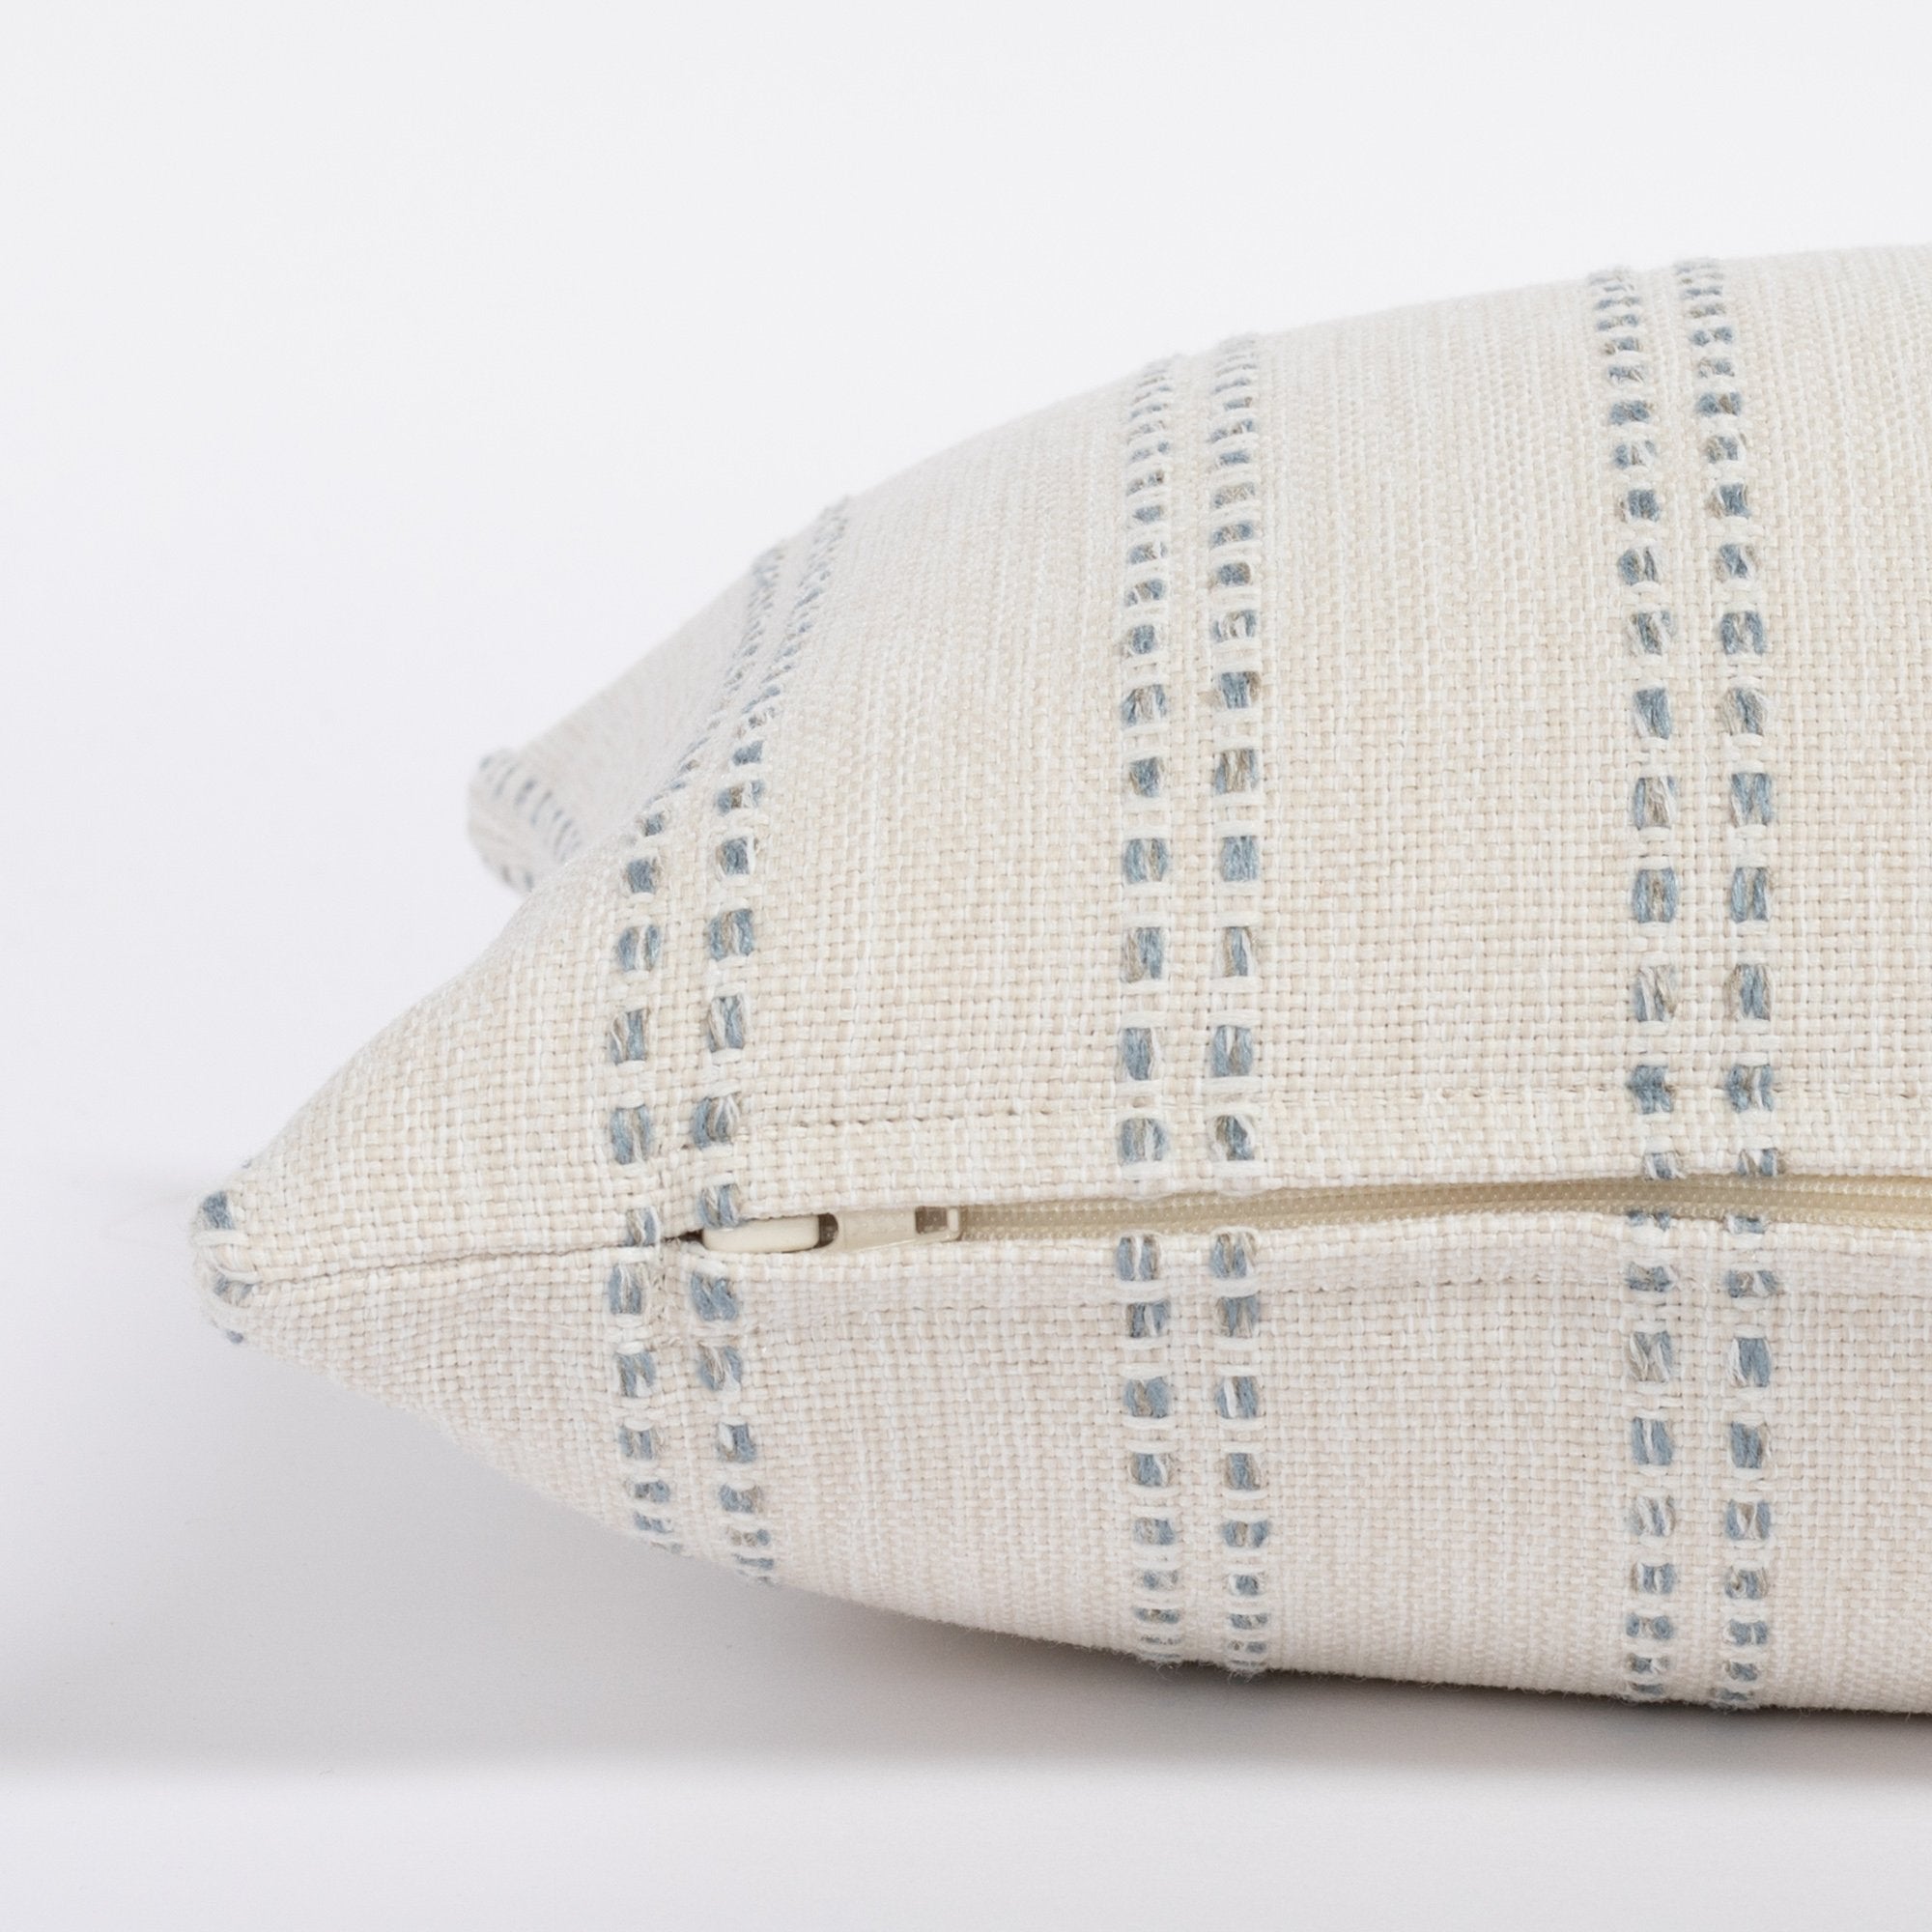 Elodie Sky 12x24 Lumbar Pillow, a cream and sky blue vertical stripe lumbar pillow : close up zipper side view